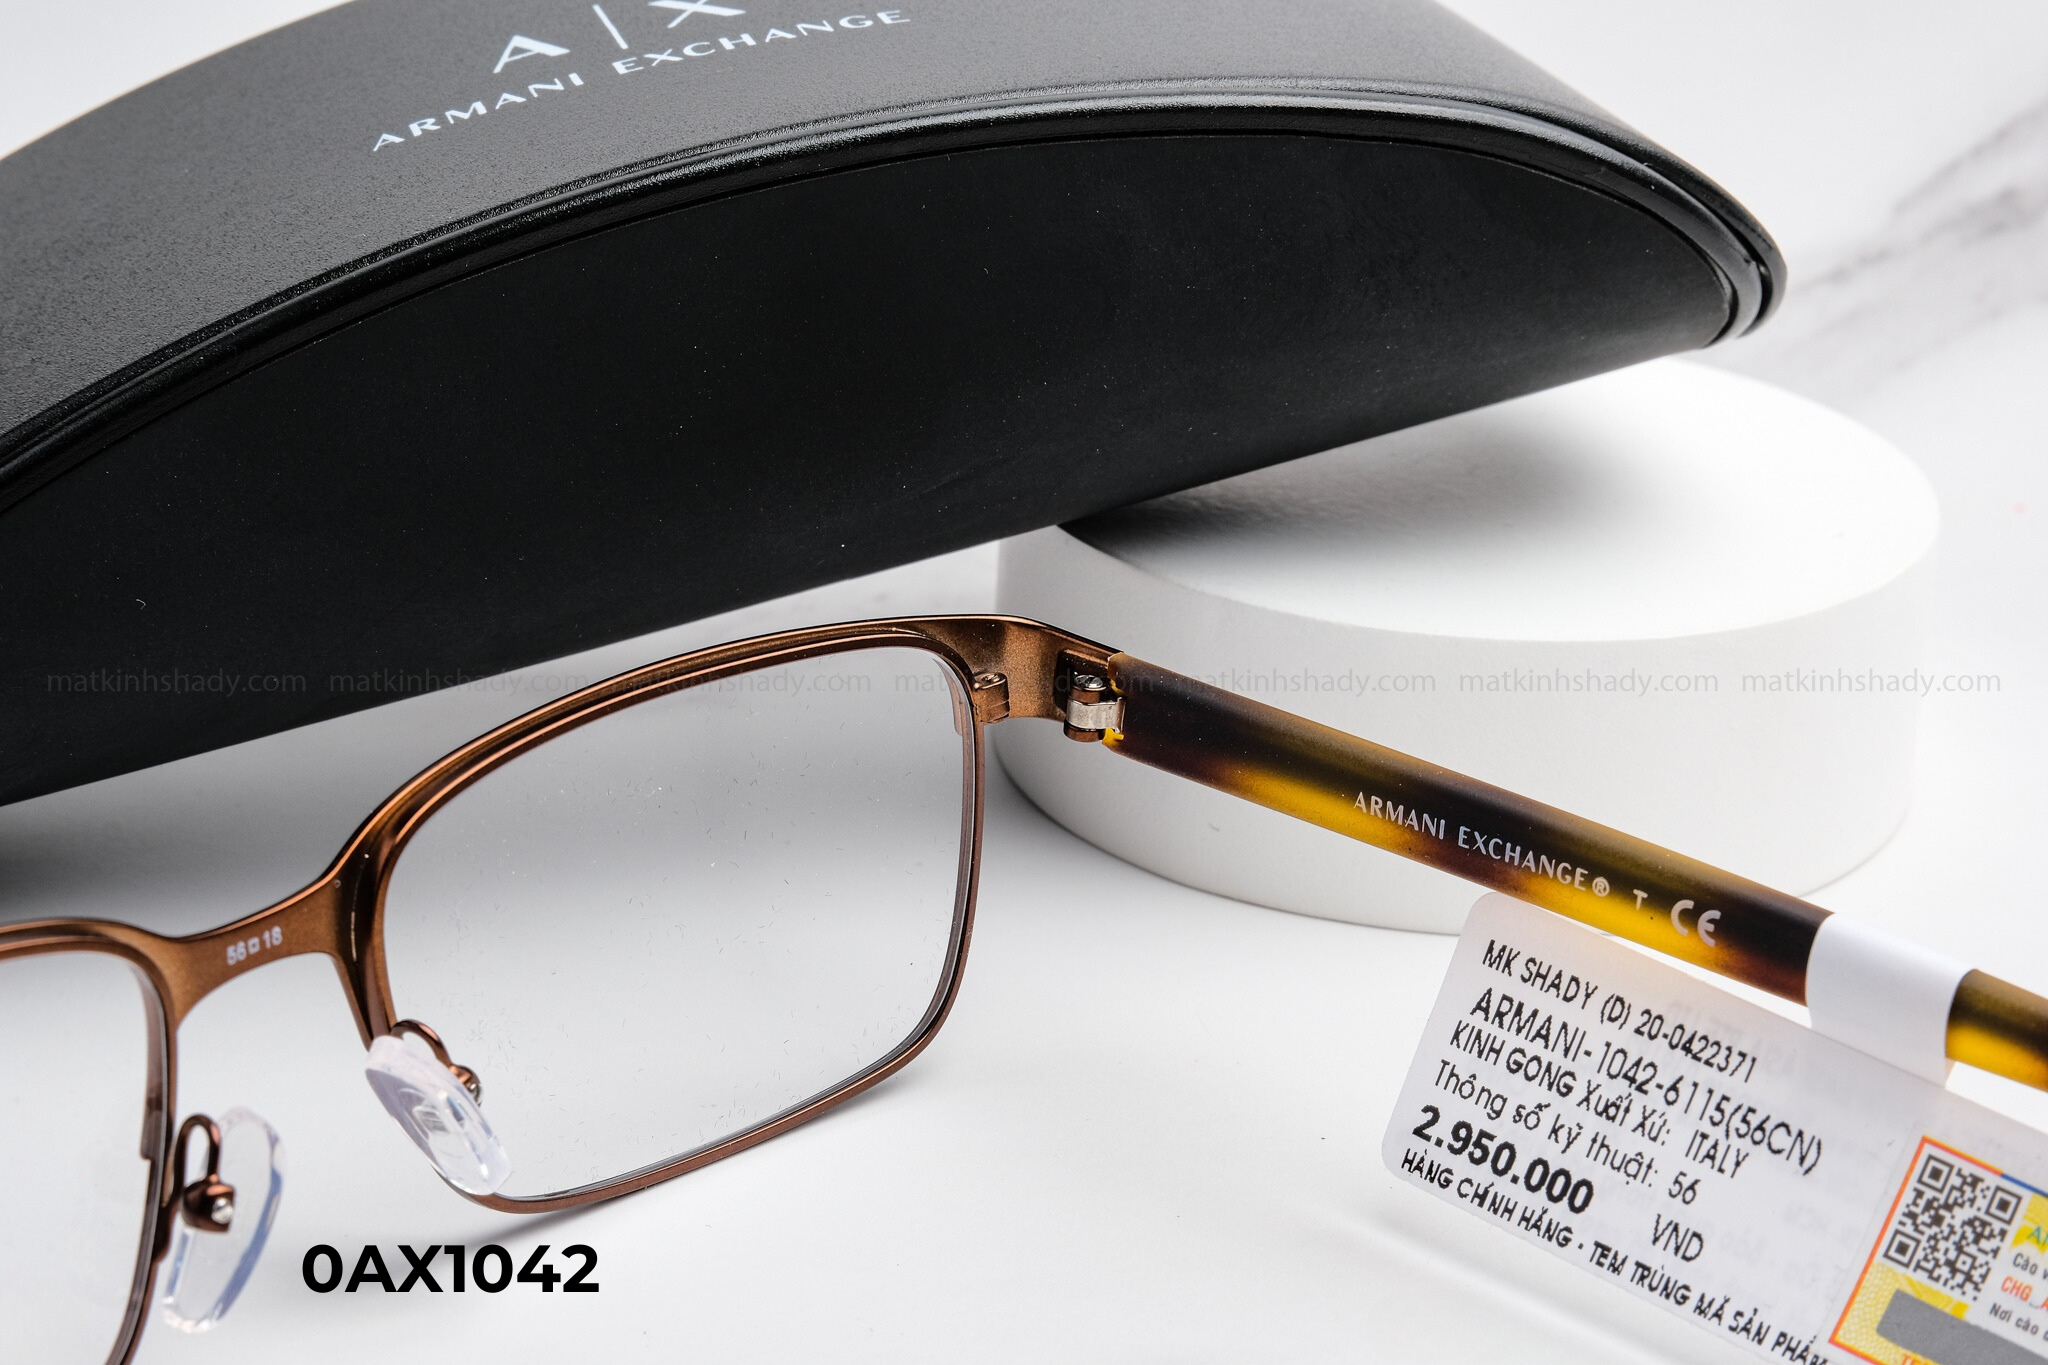  Armani Exchange Eyewear - Glasses - 0AX1042 